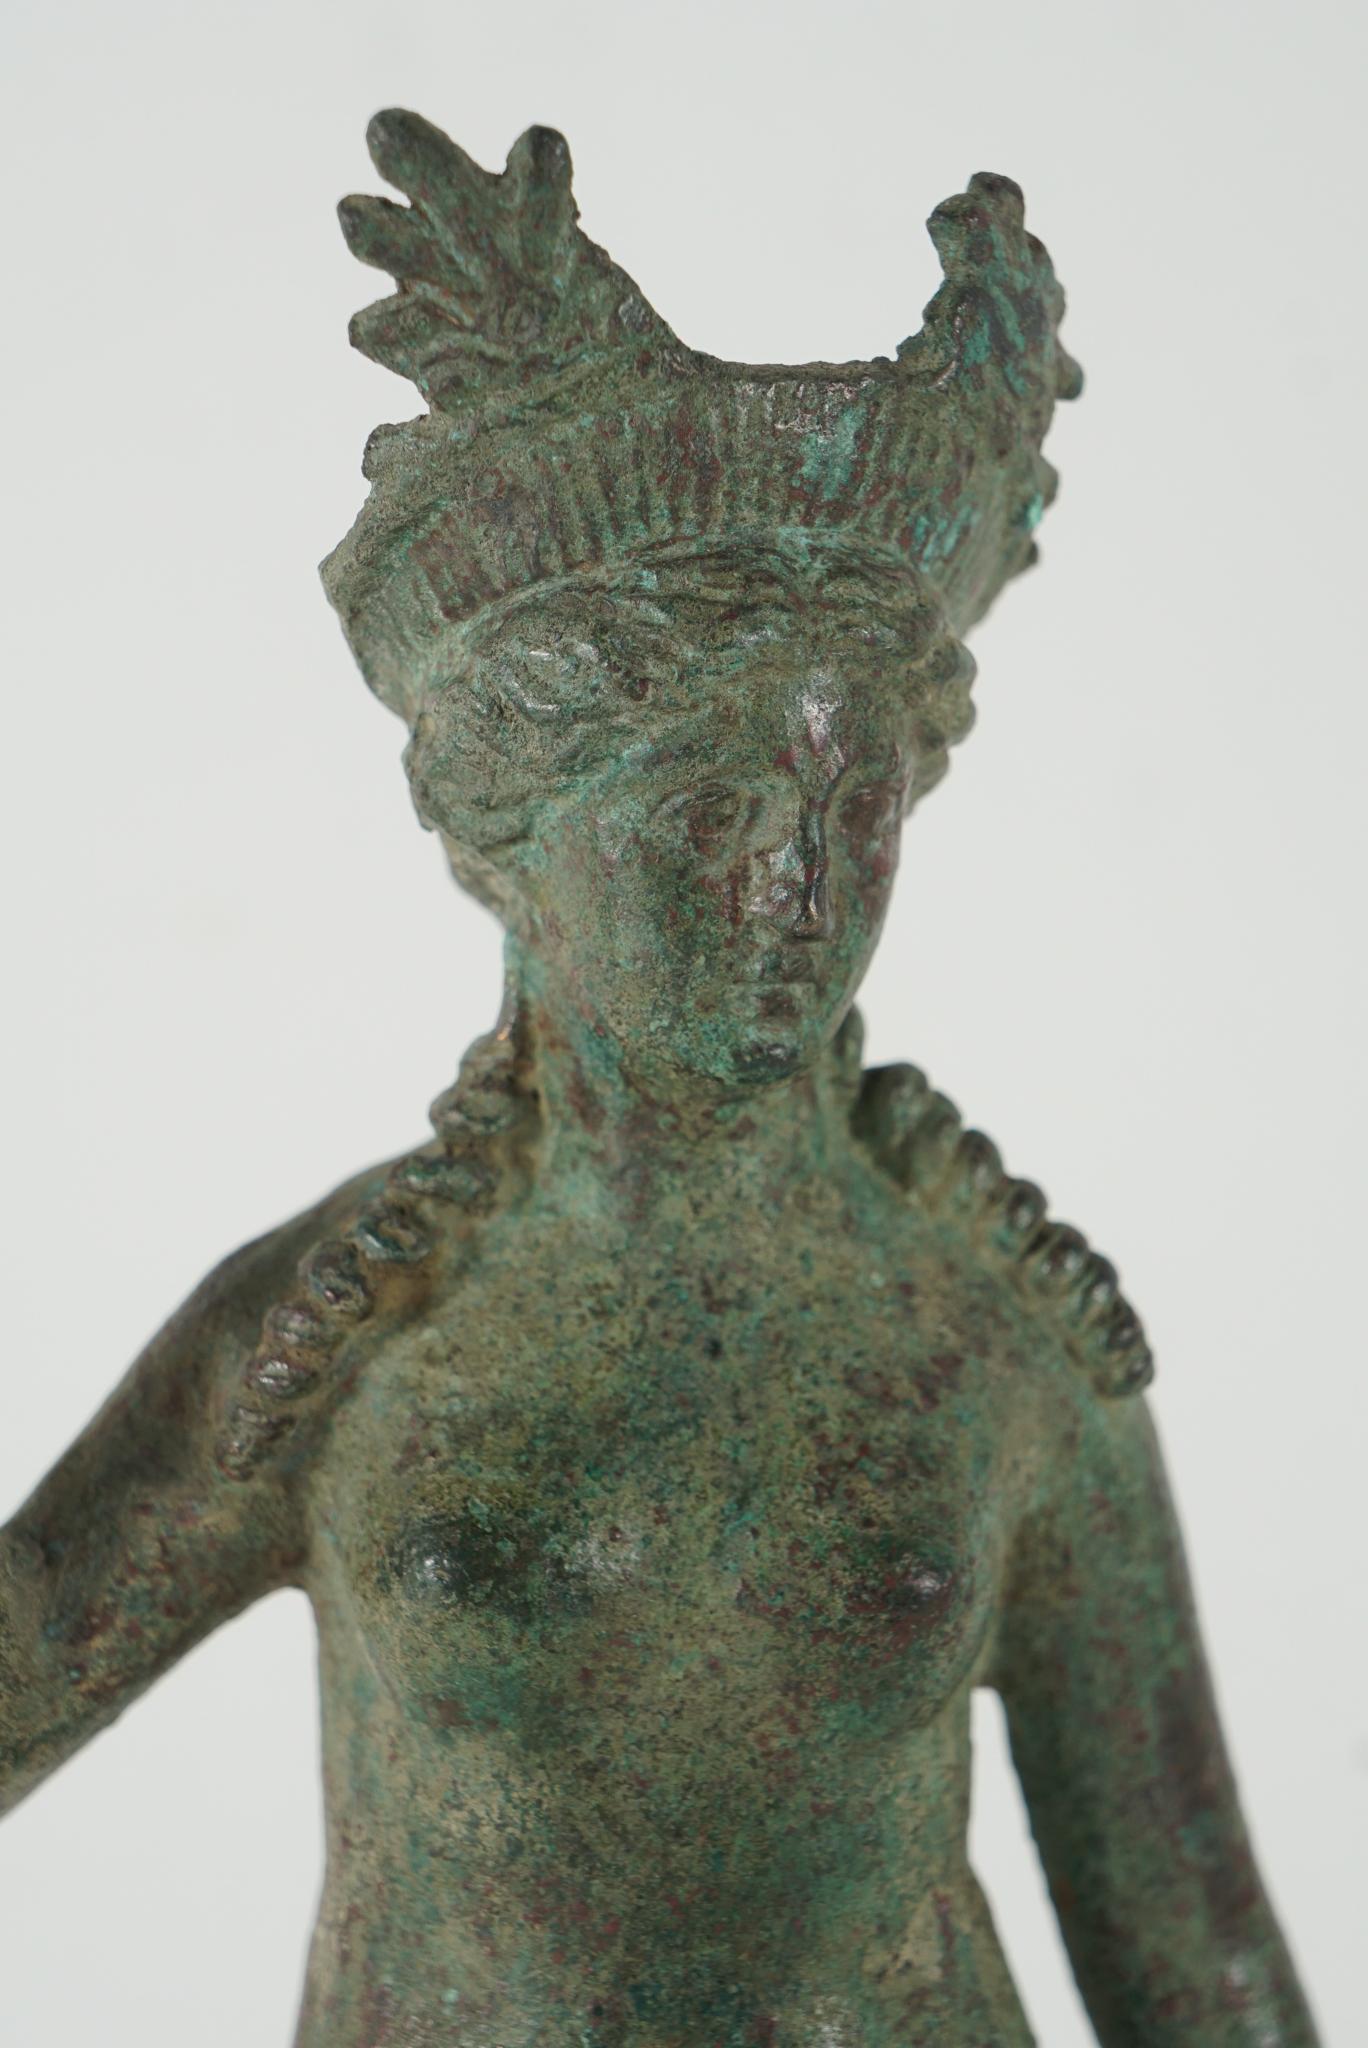 Cette belle statue en bronze ancien d'Isis/Aphrodite, déesse syncrétique d'origine hellénistique, associe la déesse égyptienne Isis à la déesse grecque Aphrodite. Créée entre le deuxième siècle avant Jésus-Christ et le premier siècle après